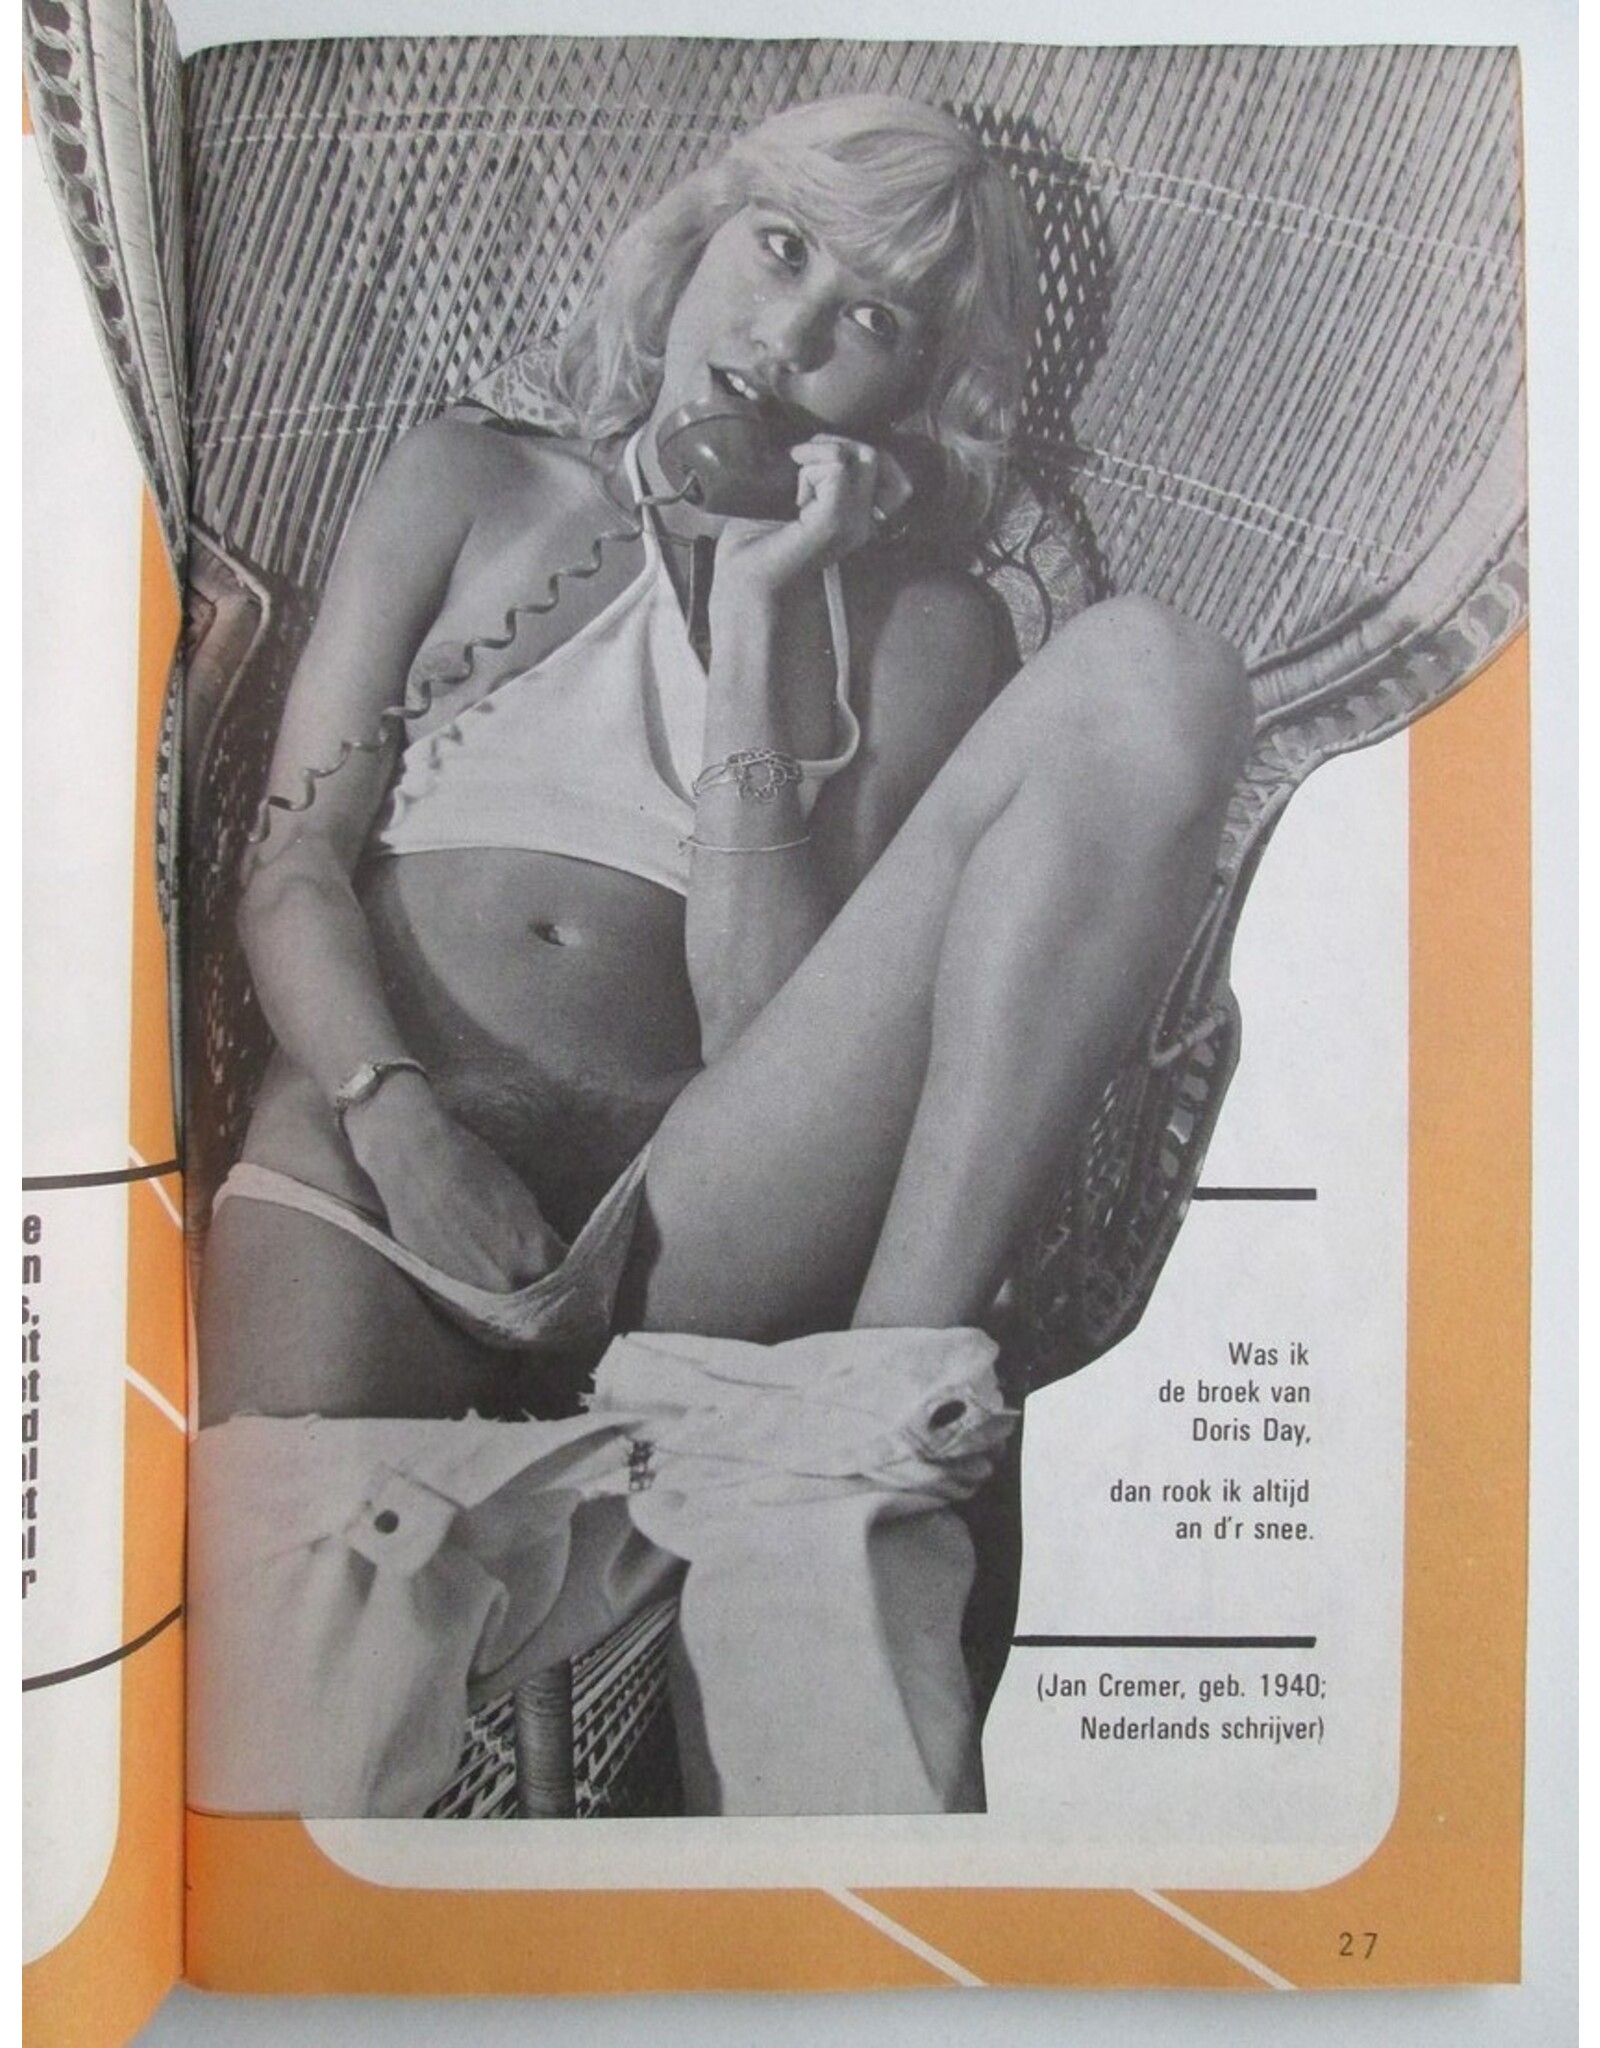 Jan Cremer - De broek van Doris Day [in: Rosie nummer 130 - 11e Jaargang. Het blad dat kontakten legt]